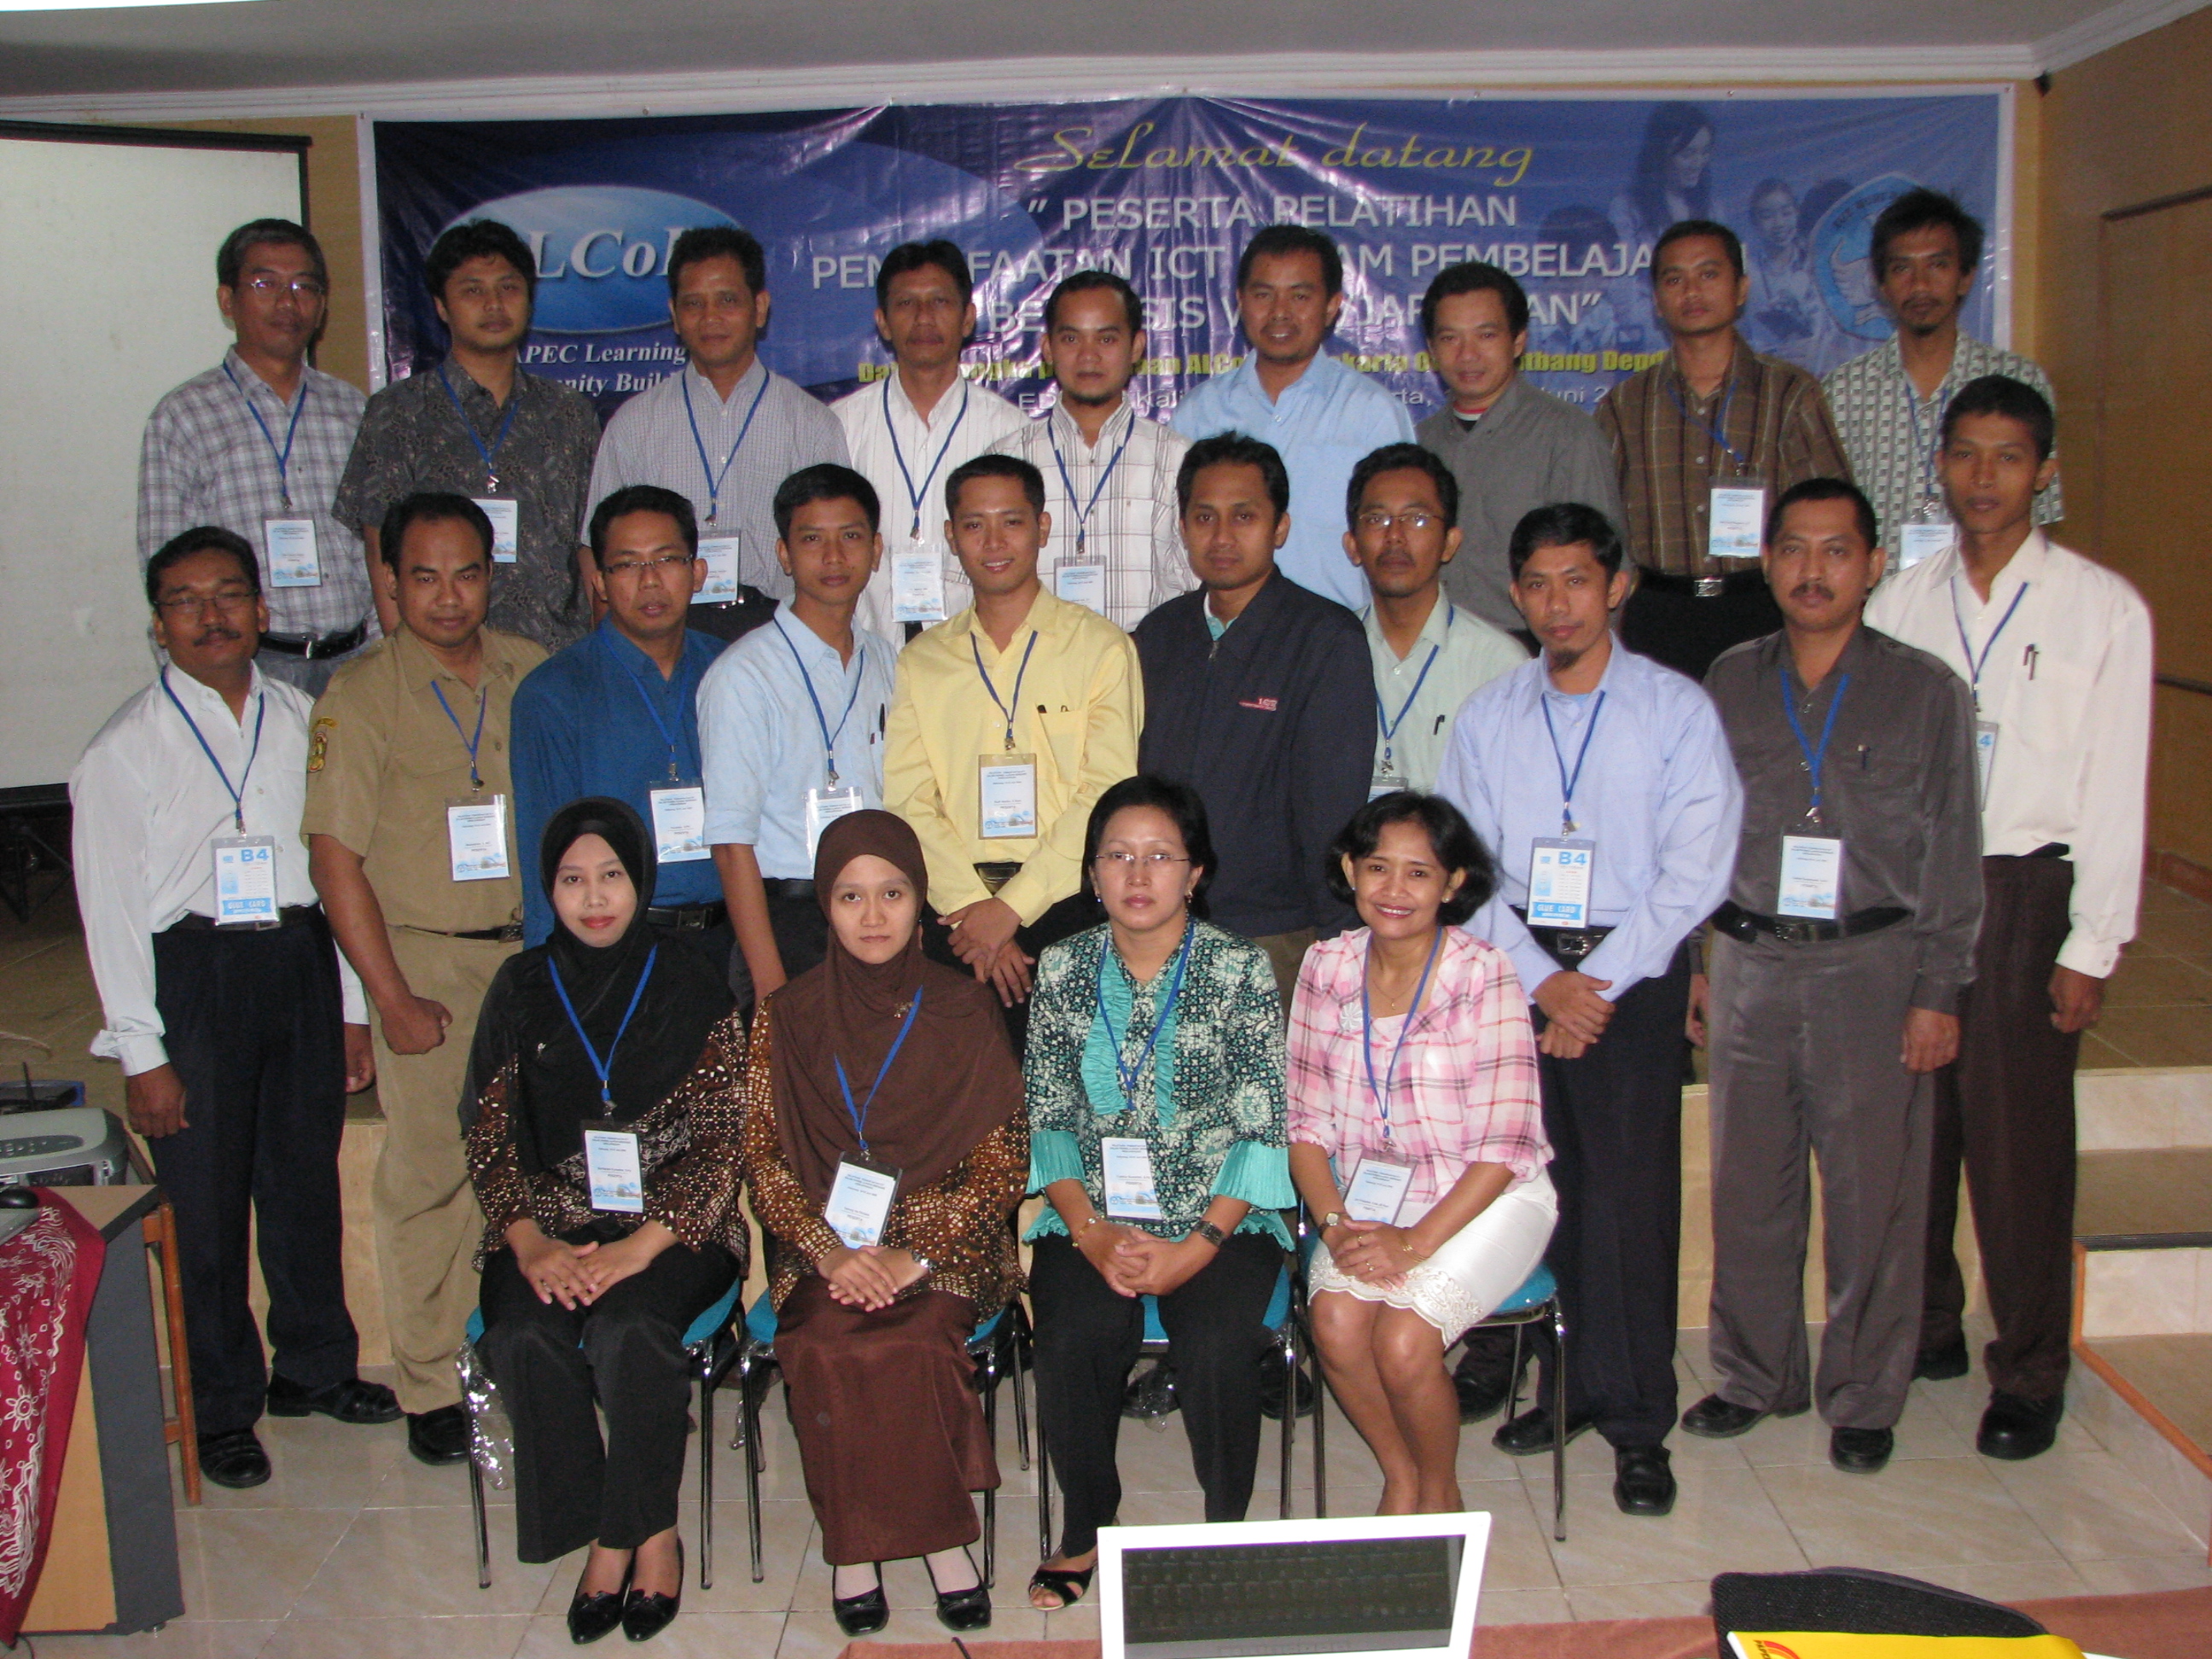 Peserta Diklat Pemanfaatn ICT dalam pembelajaran berbasis Web Jaringan Kaliurang Yogyakarta 13 17 Juni 2009